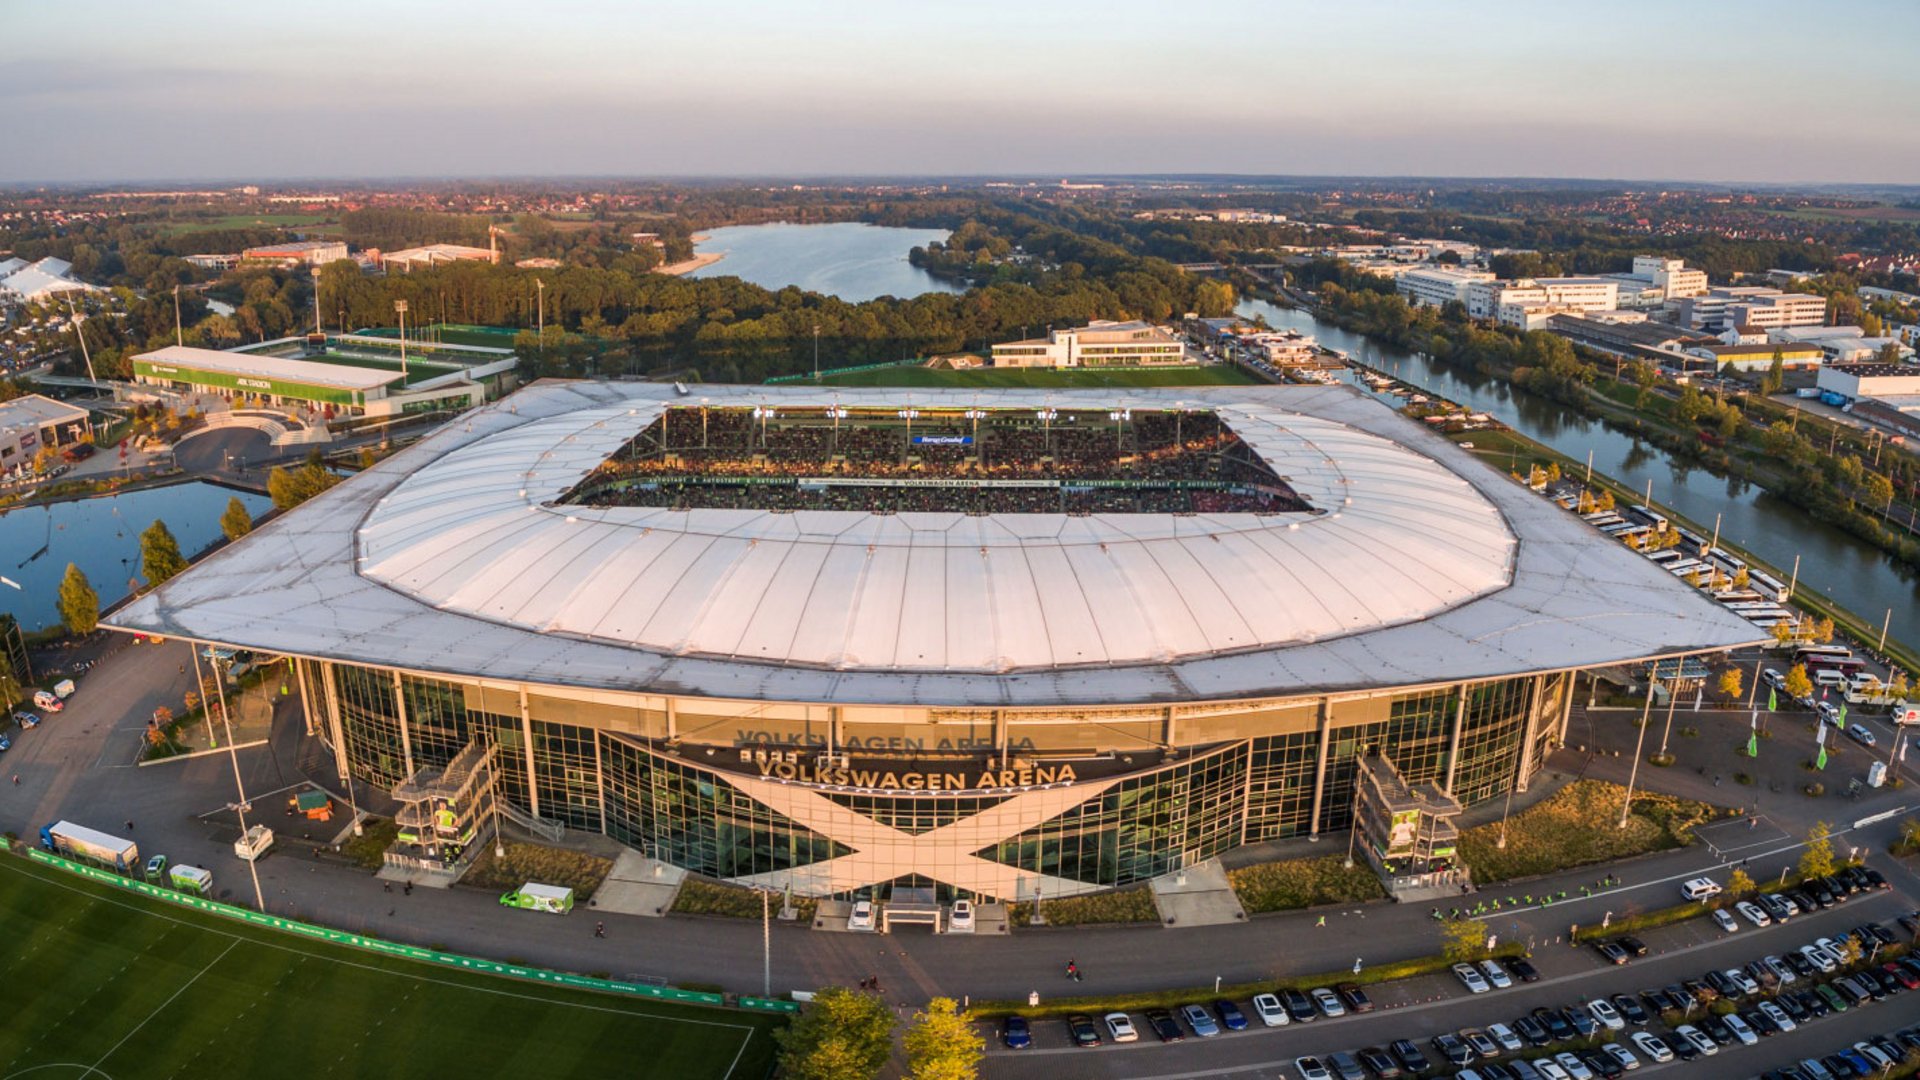 Sân vận động Volkswagen Arena – Ngôi nhà của Câu lạc bộ Bóng đá Wolfsburg